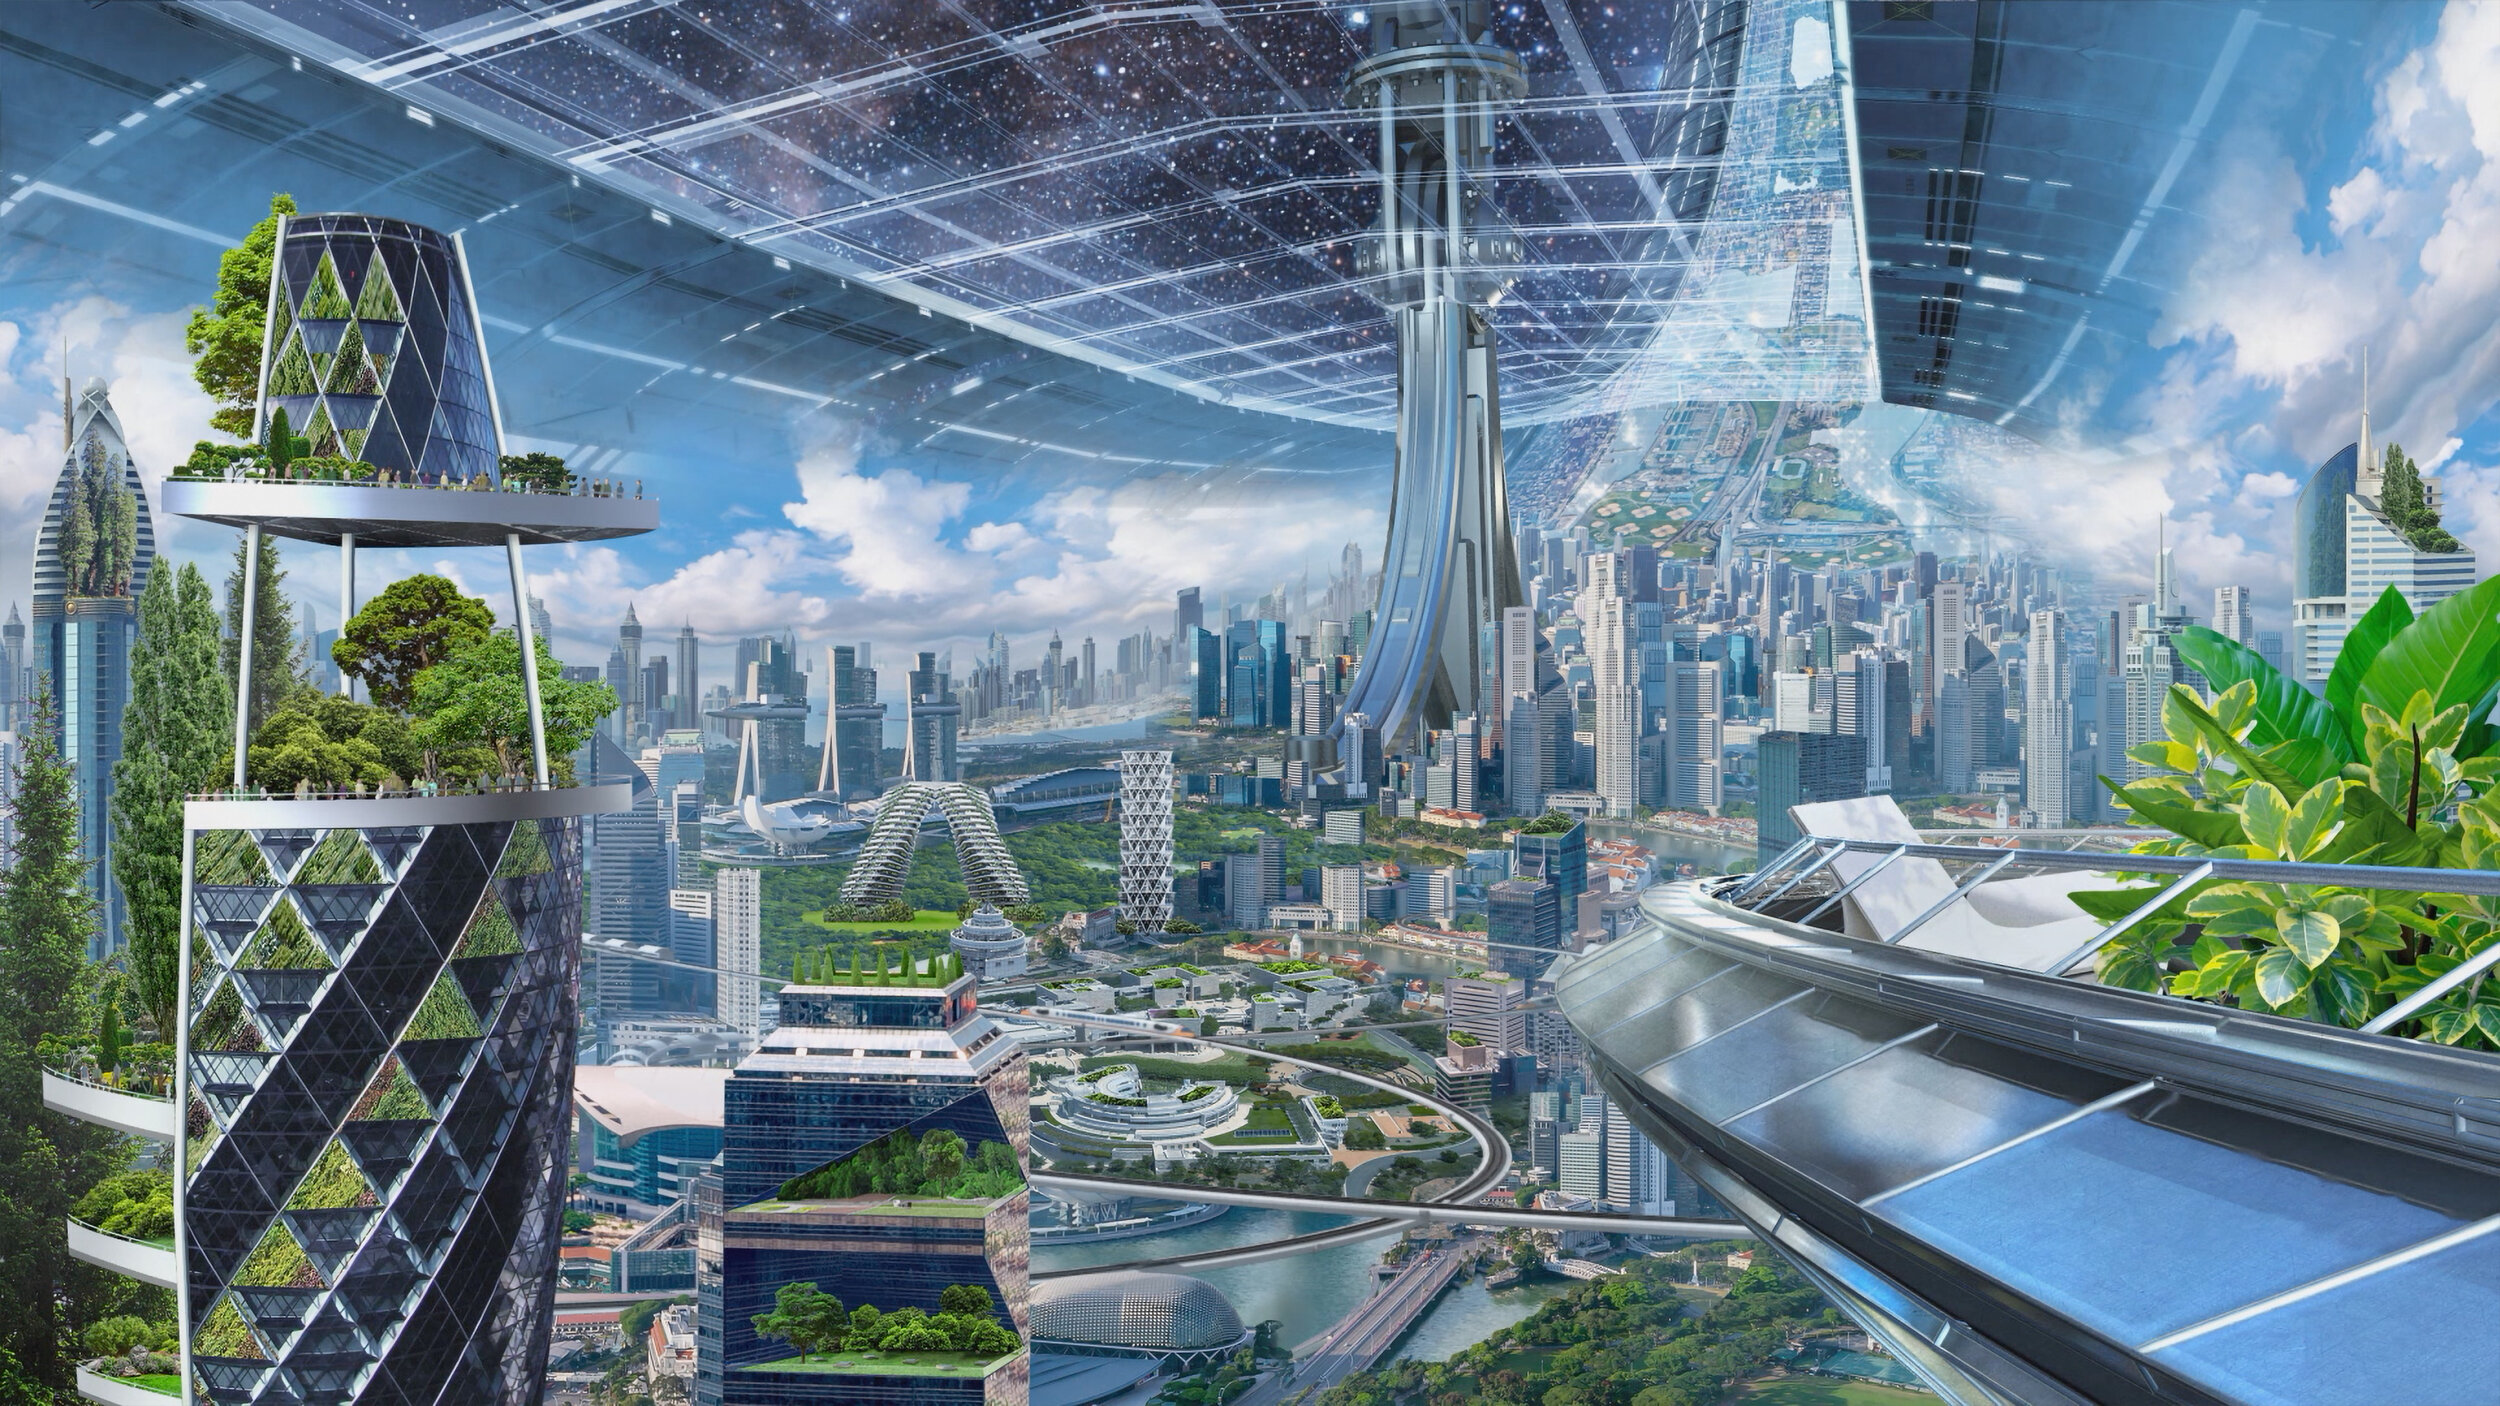 Будущая жизнь на земле. Экогород будущего концепт. Экогород город будущего. Мир будущего. Футуристический город.